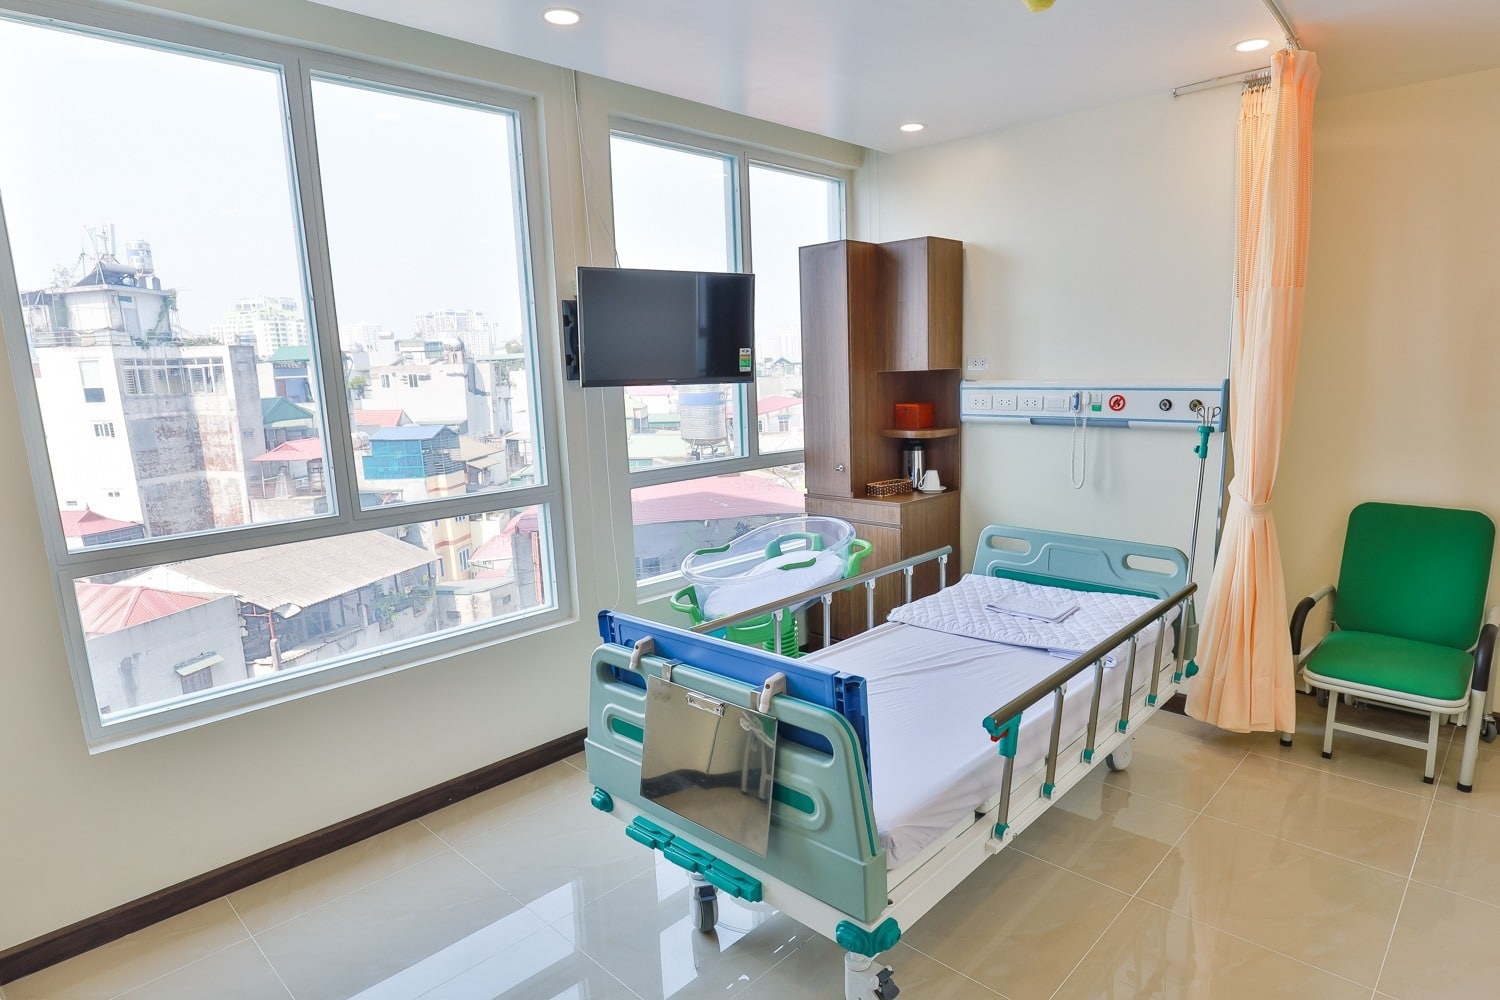 10 bệnh viện sản uy tín tại Hà Nội được nhiều mẹ tin tưởng lựa chọn cho hành trình mang thai và sinh con - Ảnh 6.